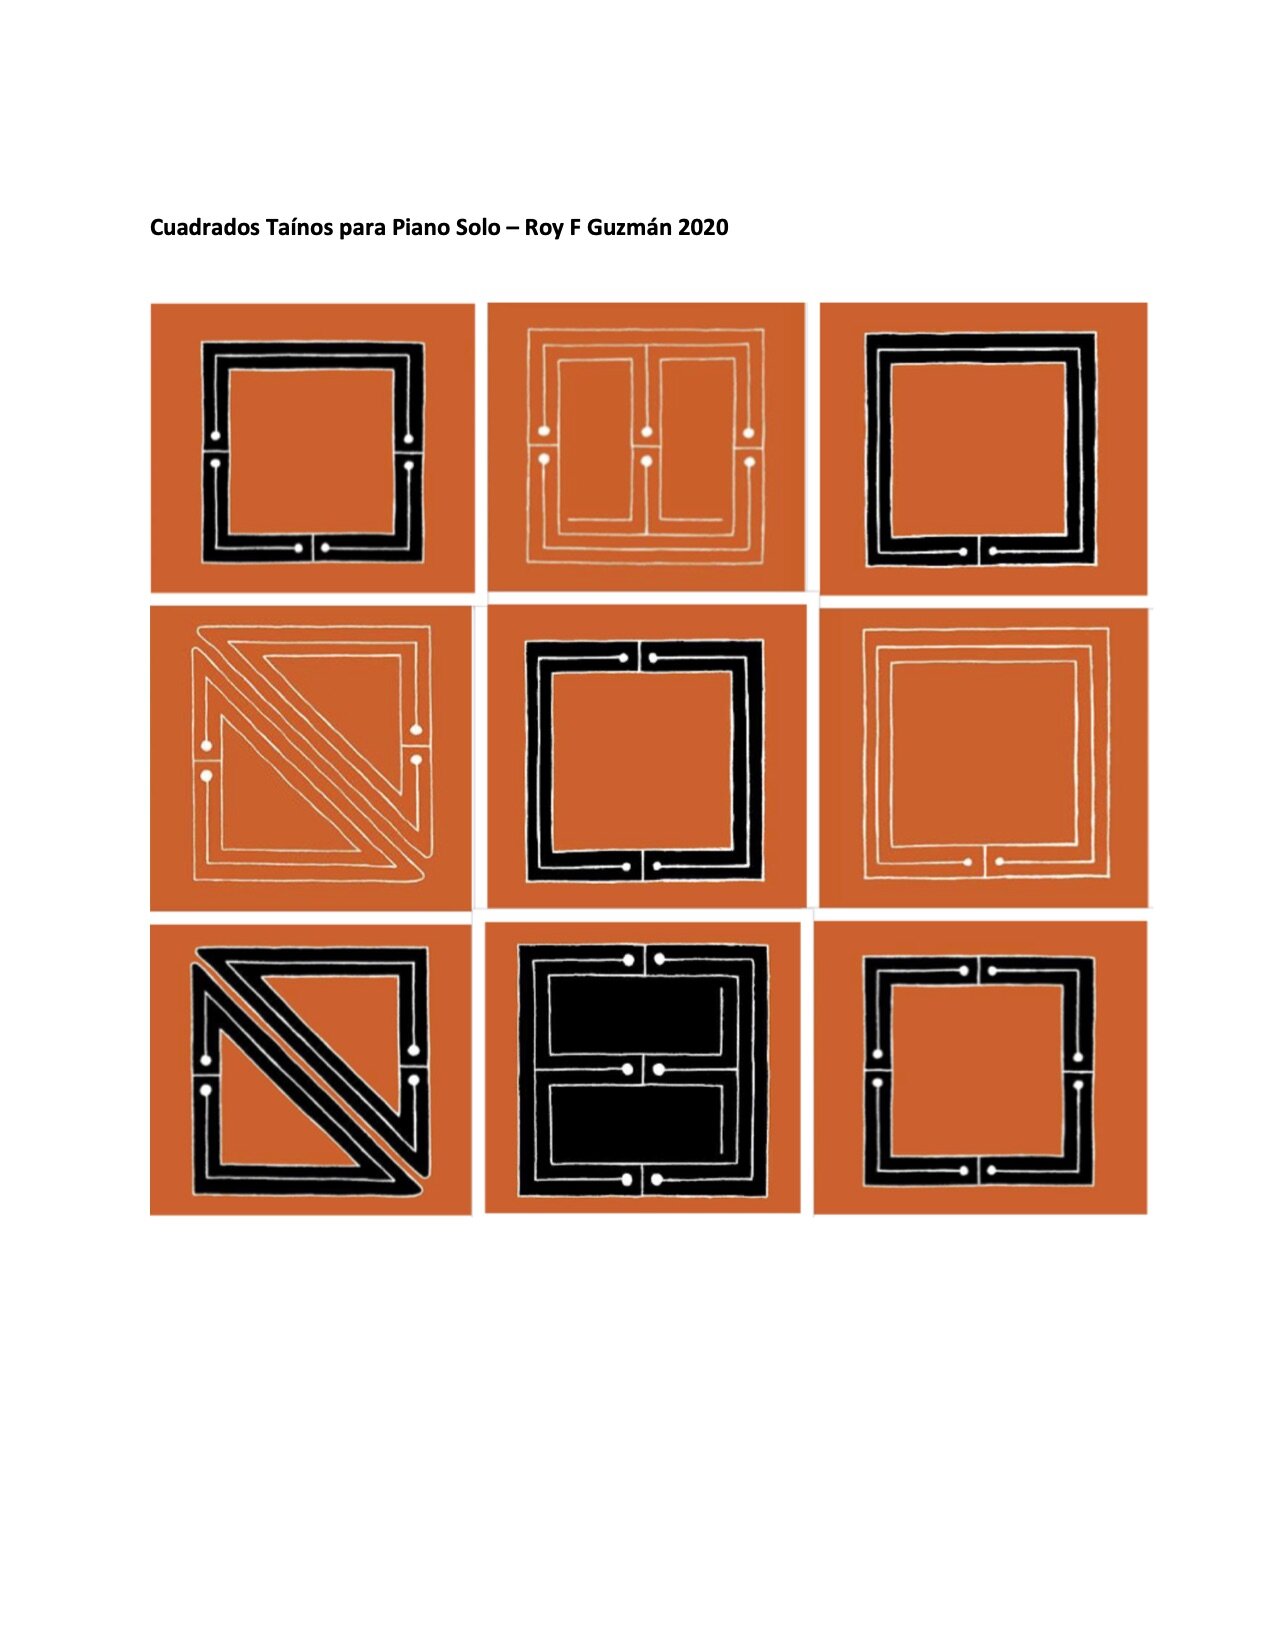 Petroglifos Tainos 2 - Cuadrados - Para Piano 1.jpg